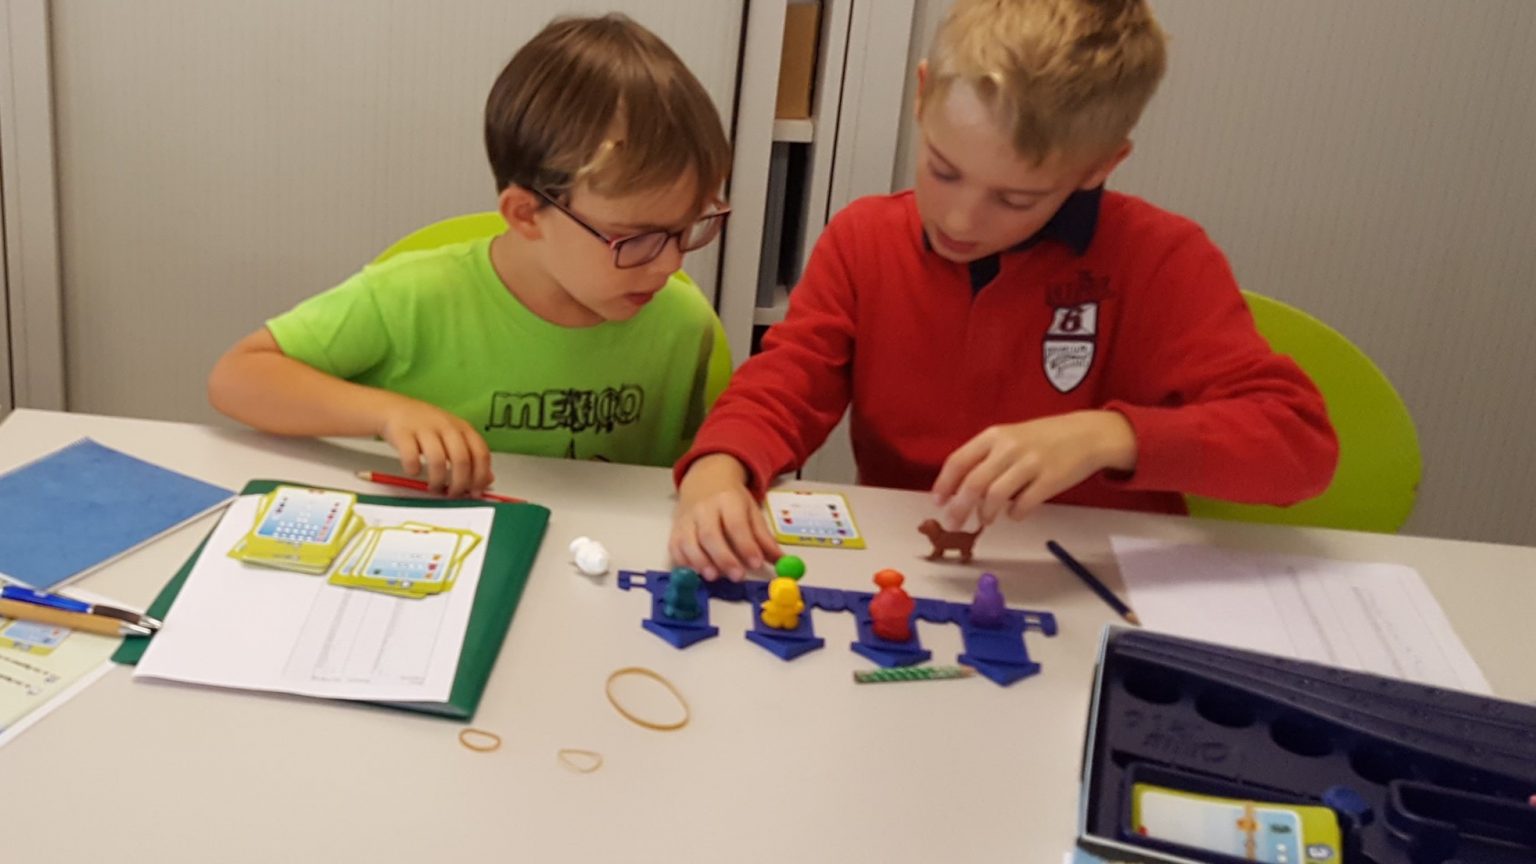 Maths en jeu ‒ Promotion de l'éducation et des sciences ‐ EPFL